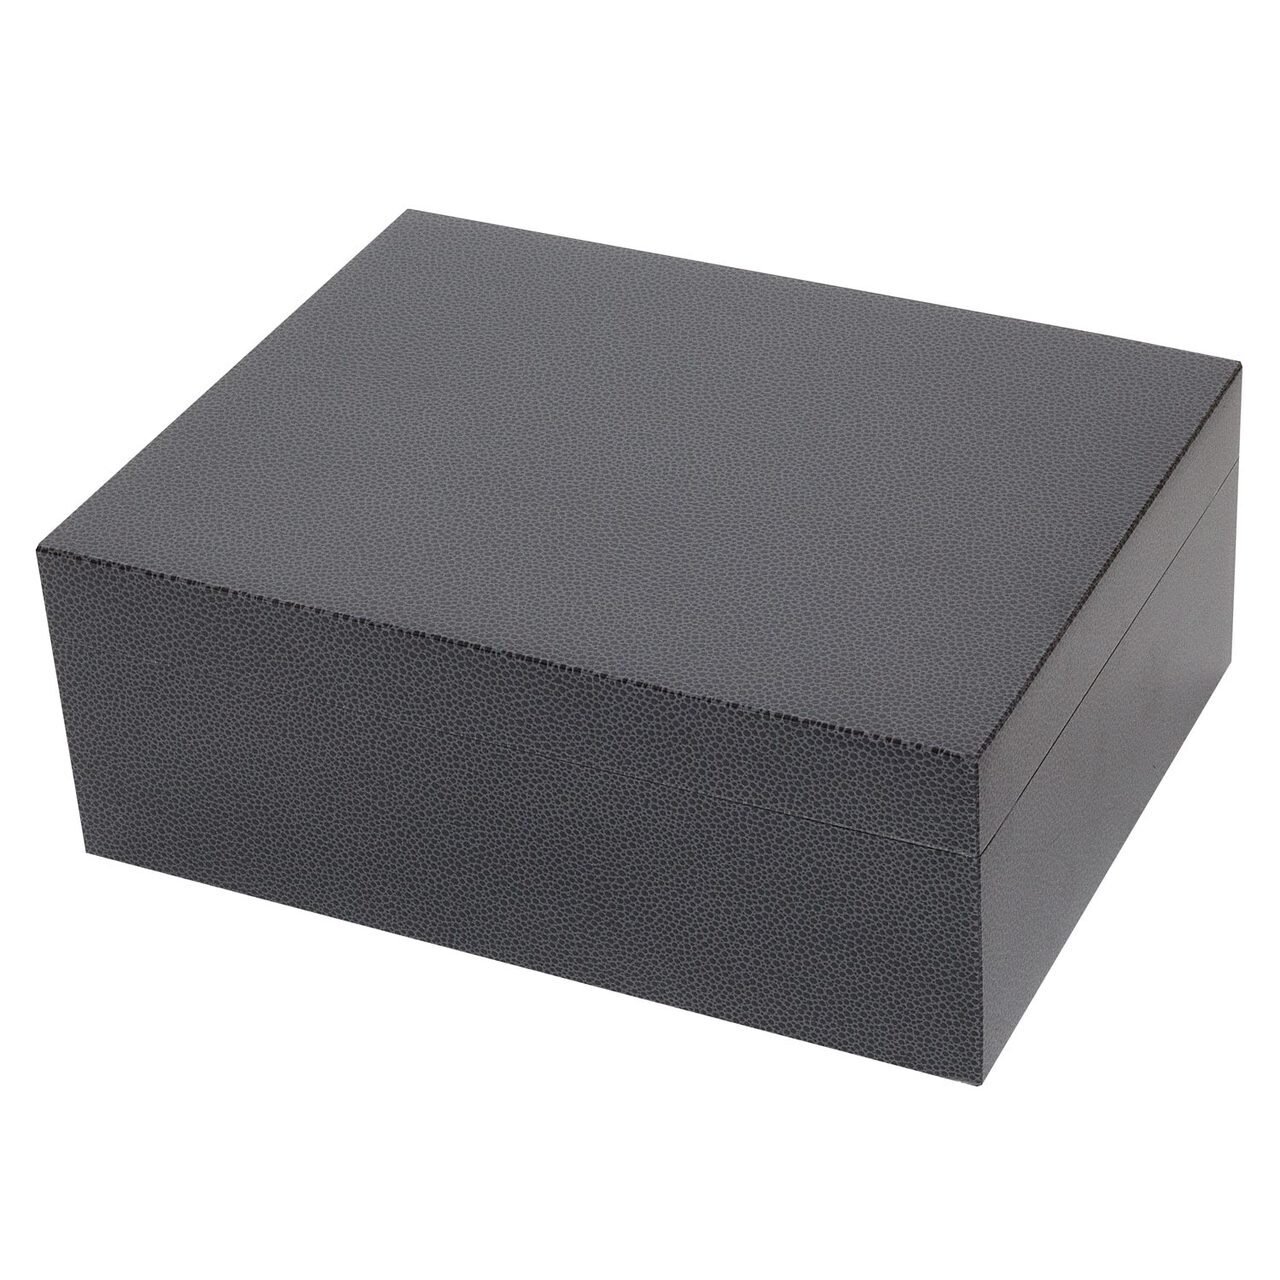 Tizo Shagreen Black Box